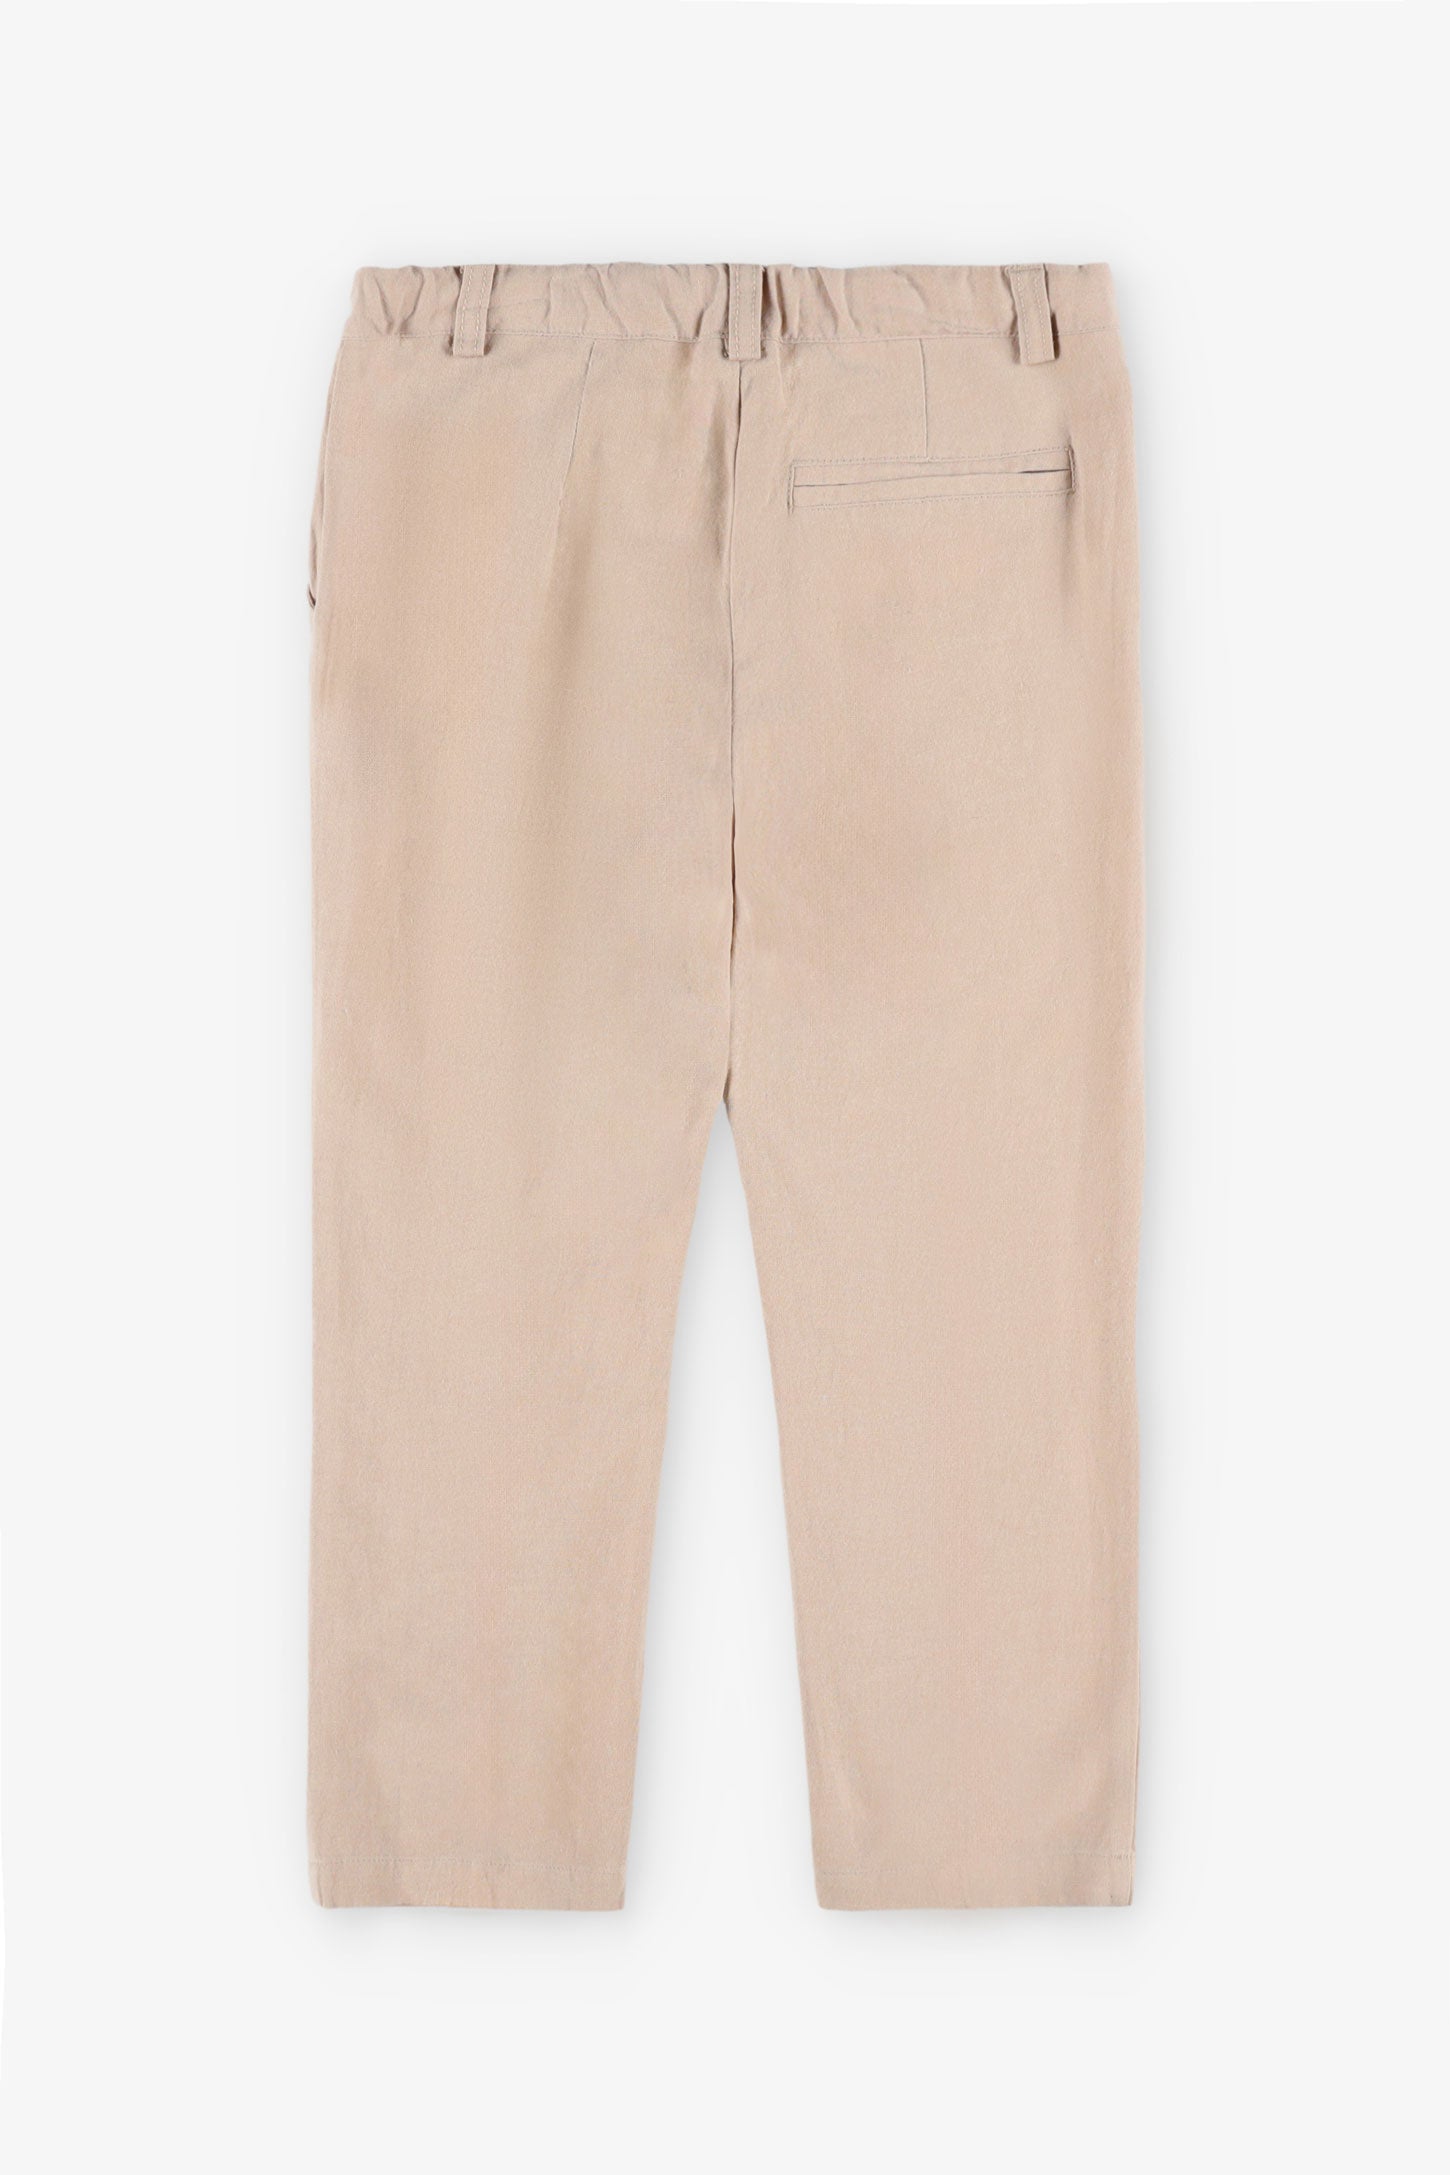 Pantalon taille élastique lin, 2T-3T - Bébé garçon && BEIGE